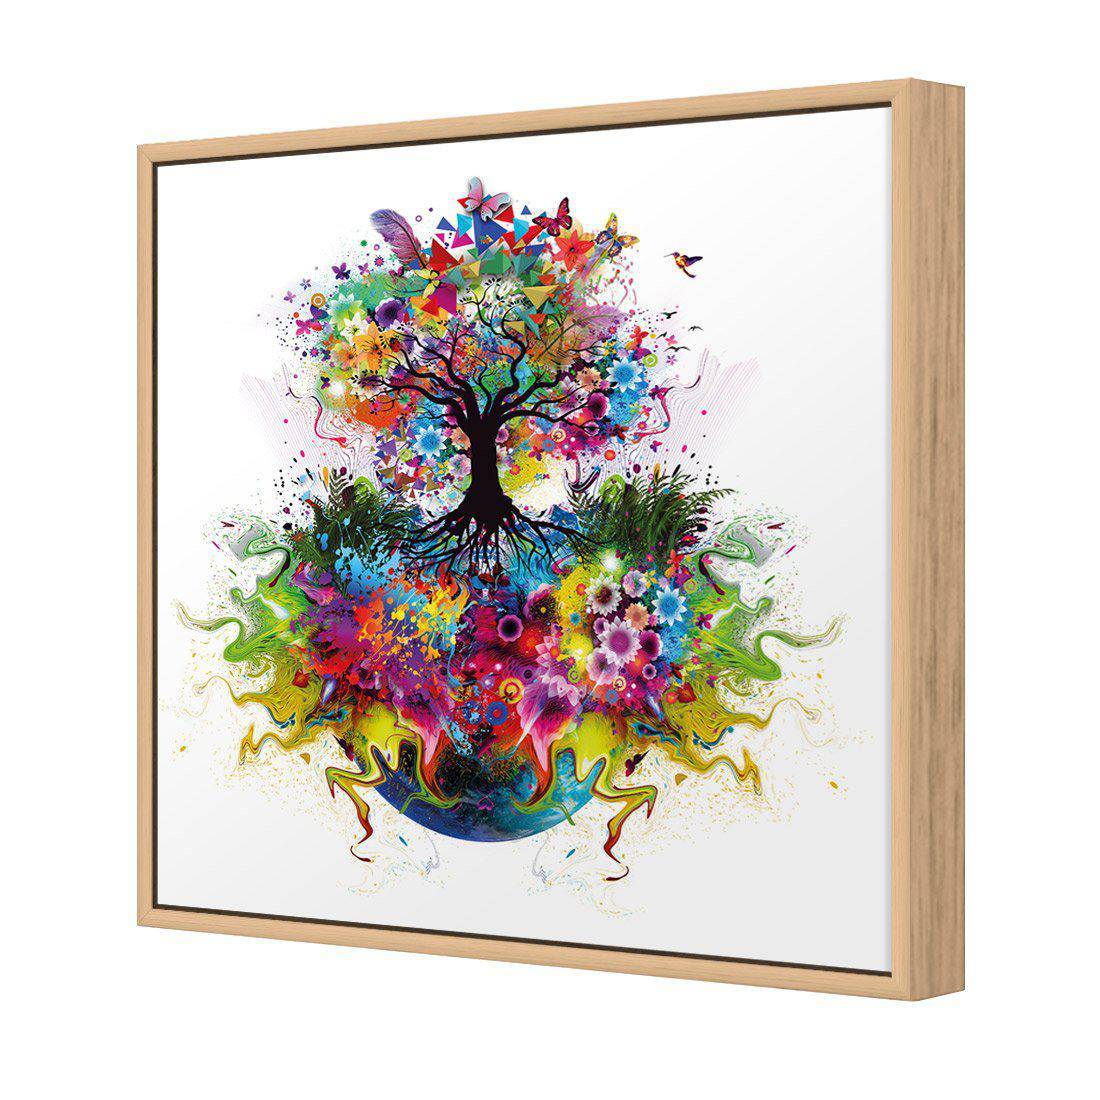 Flower Power Canvas Art-Canvas-Wall Art Designs-30x30cm-Canvas - Oak Frame-Wall Art Designs